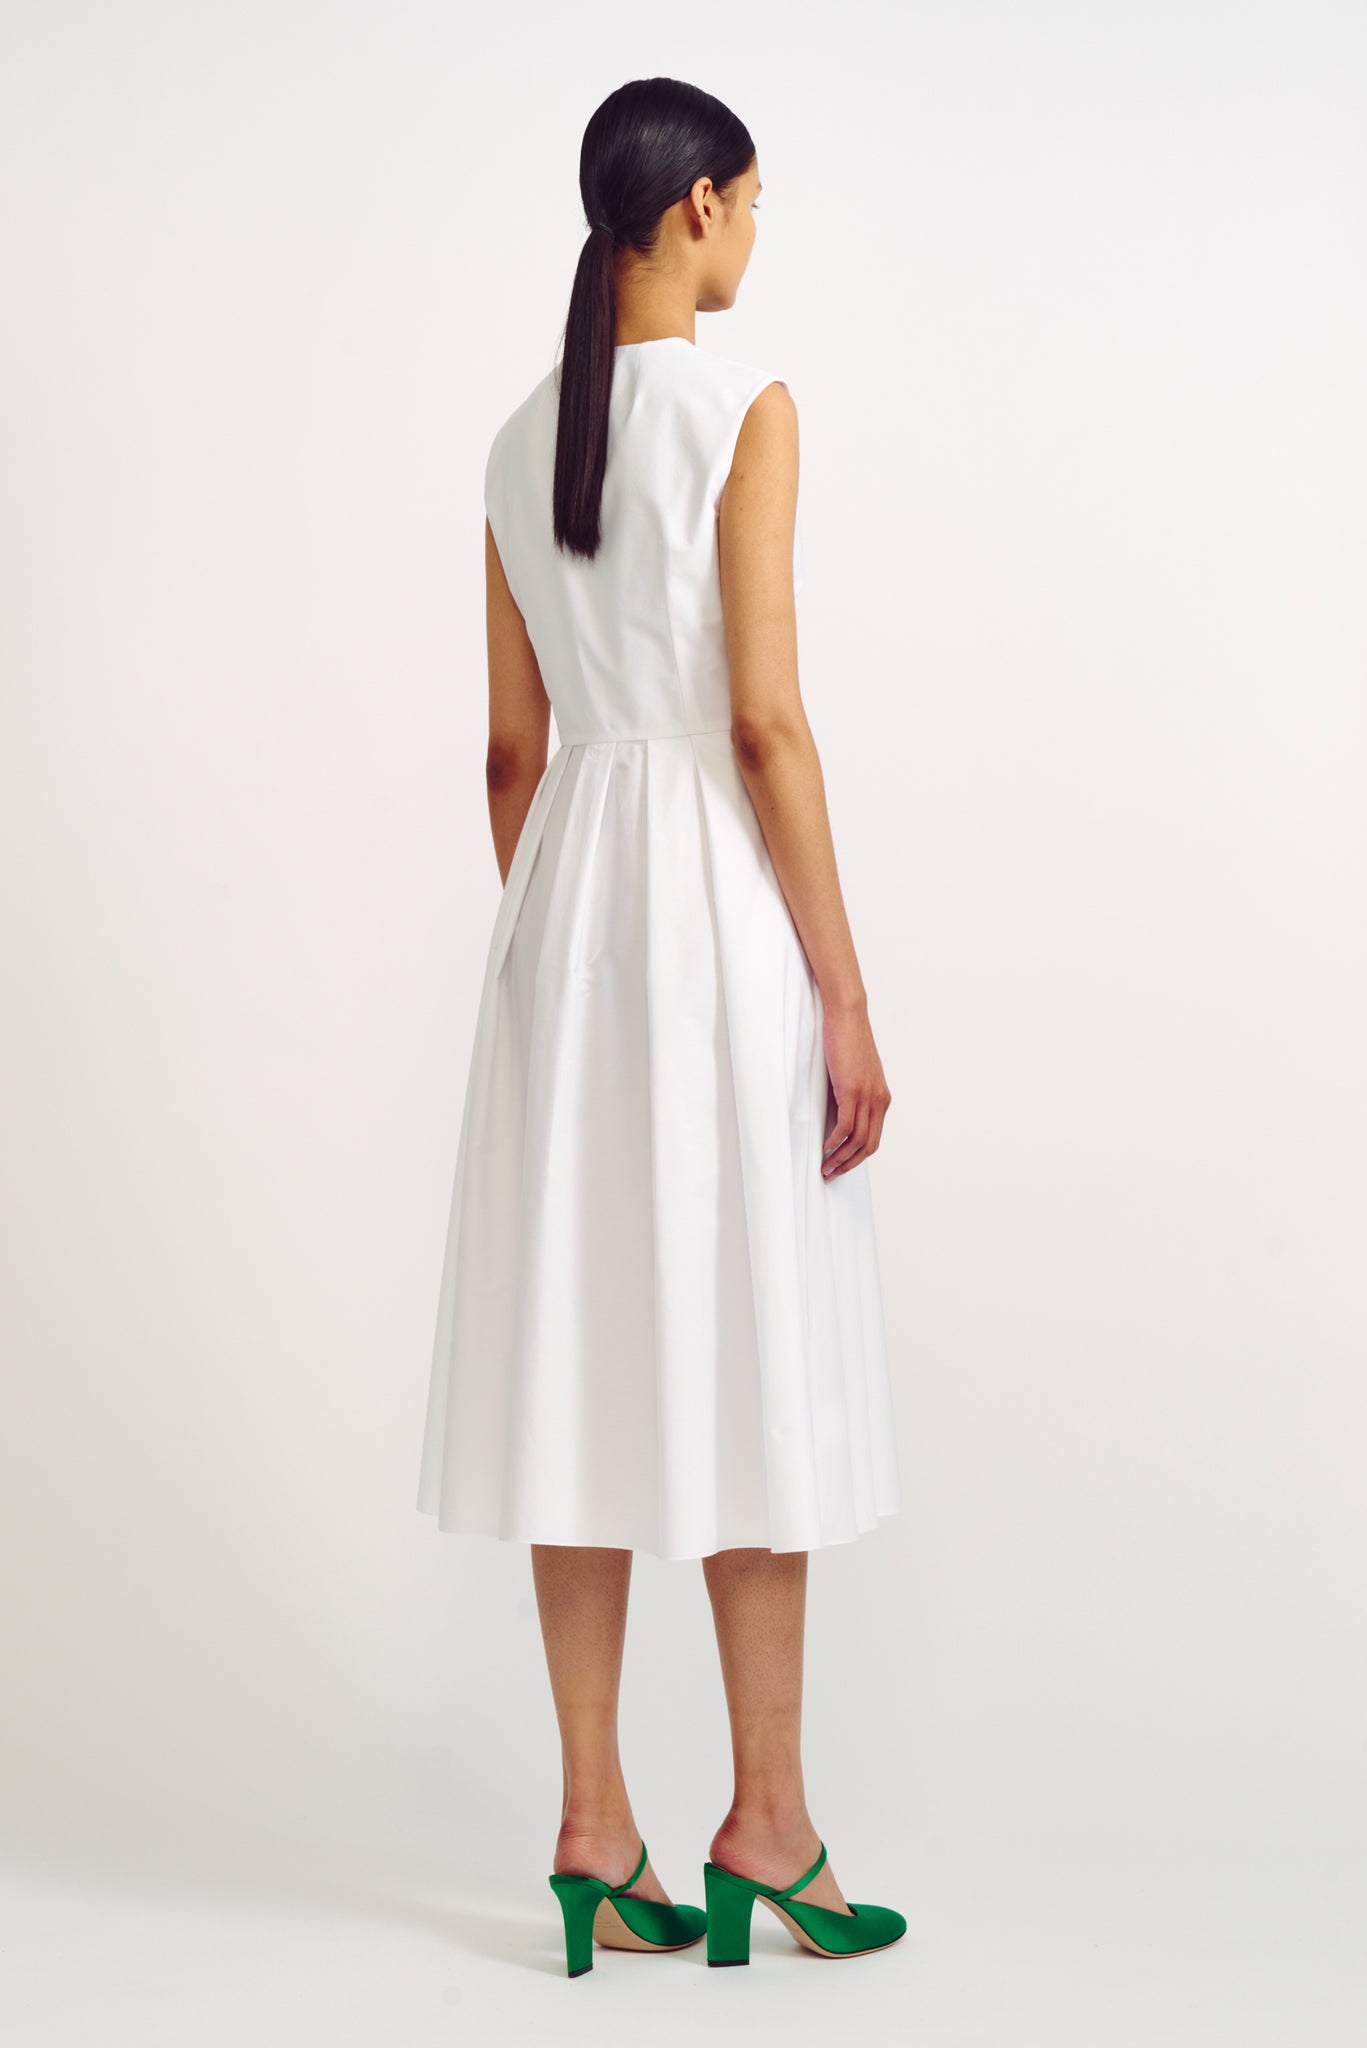 Suzu White Cotton Zip Front Dress | Emilia Wickstead